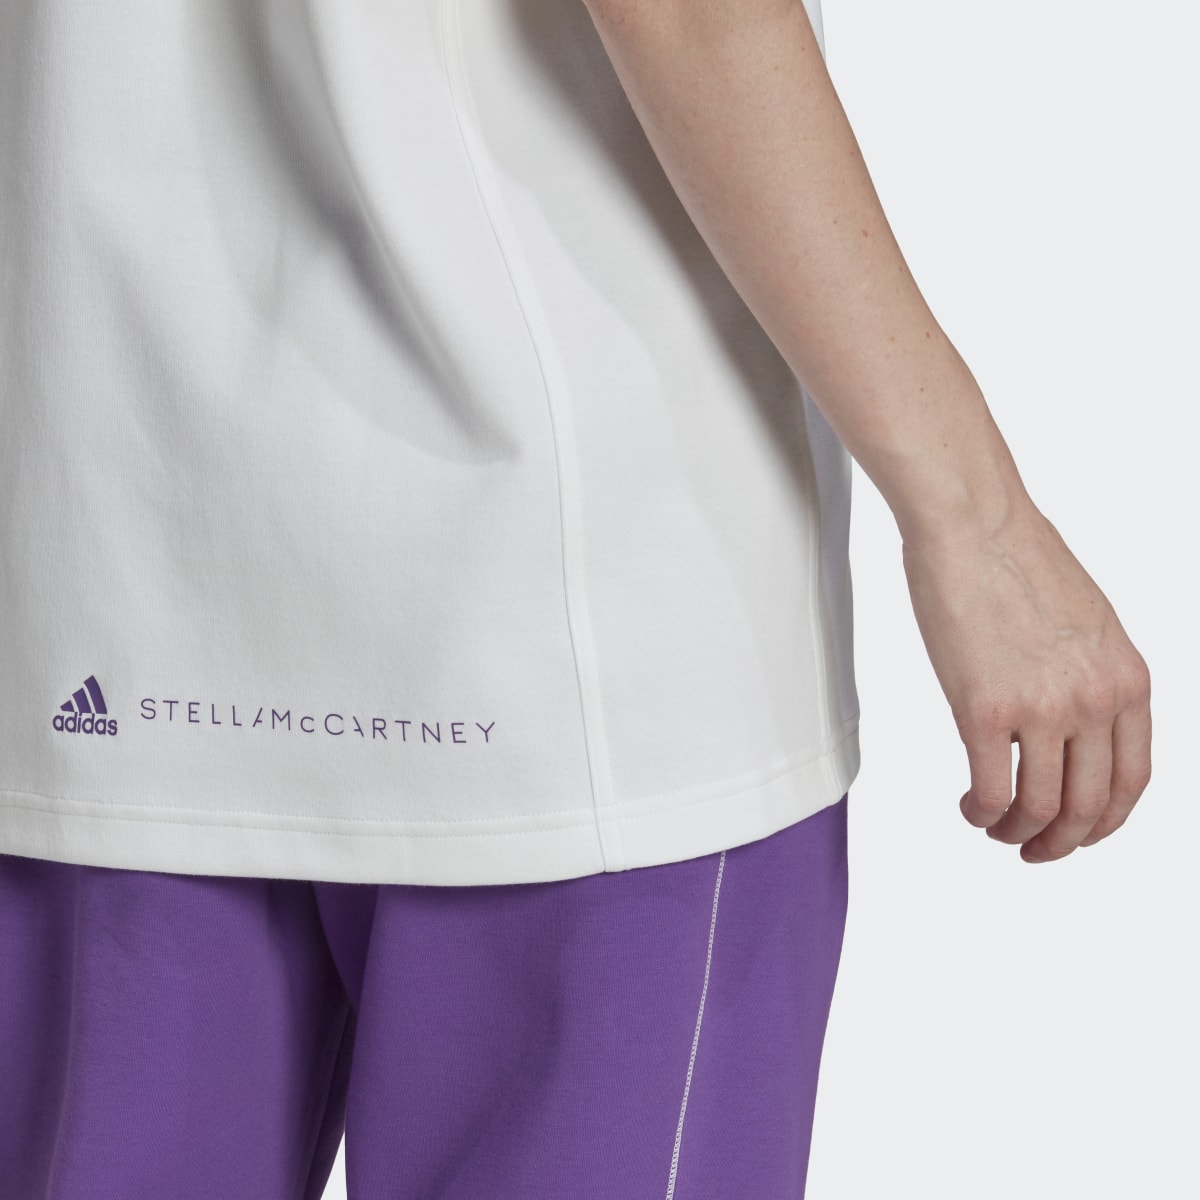 Adidas by Stella McCartney Logo Tee. 7